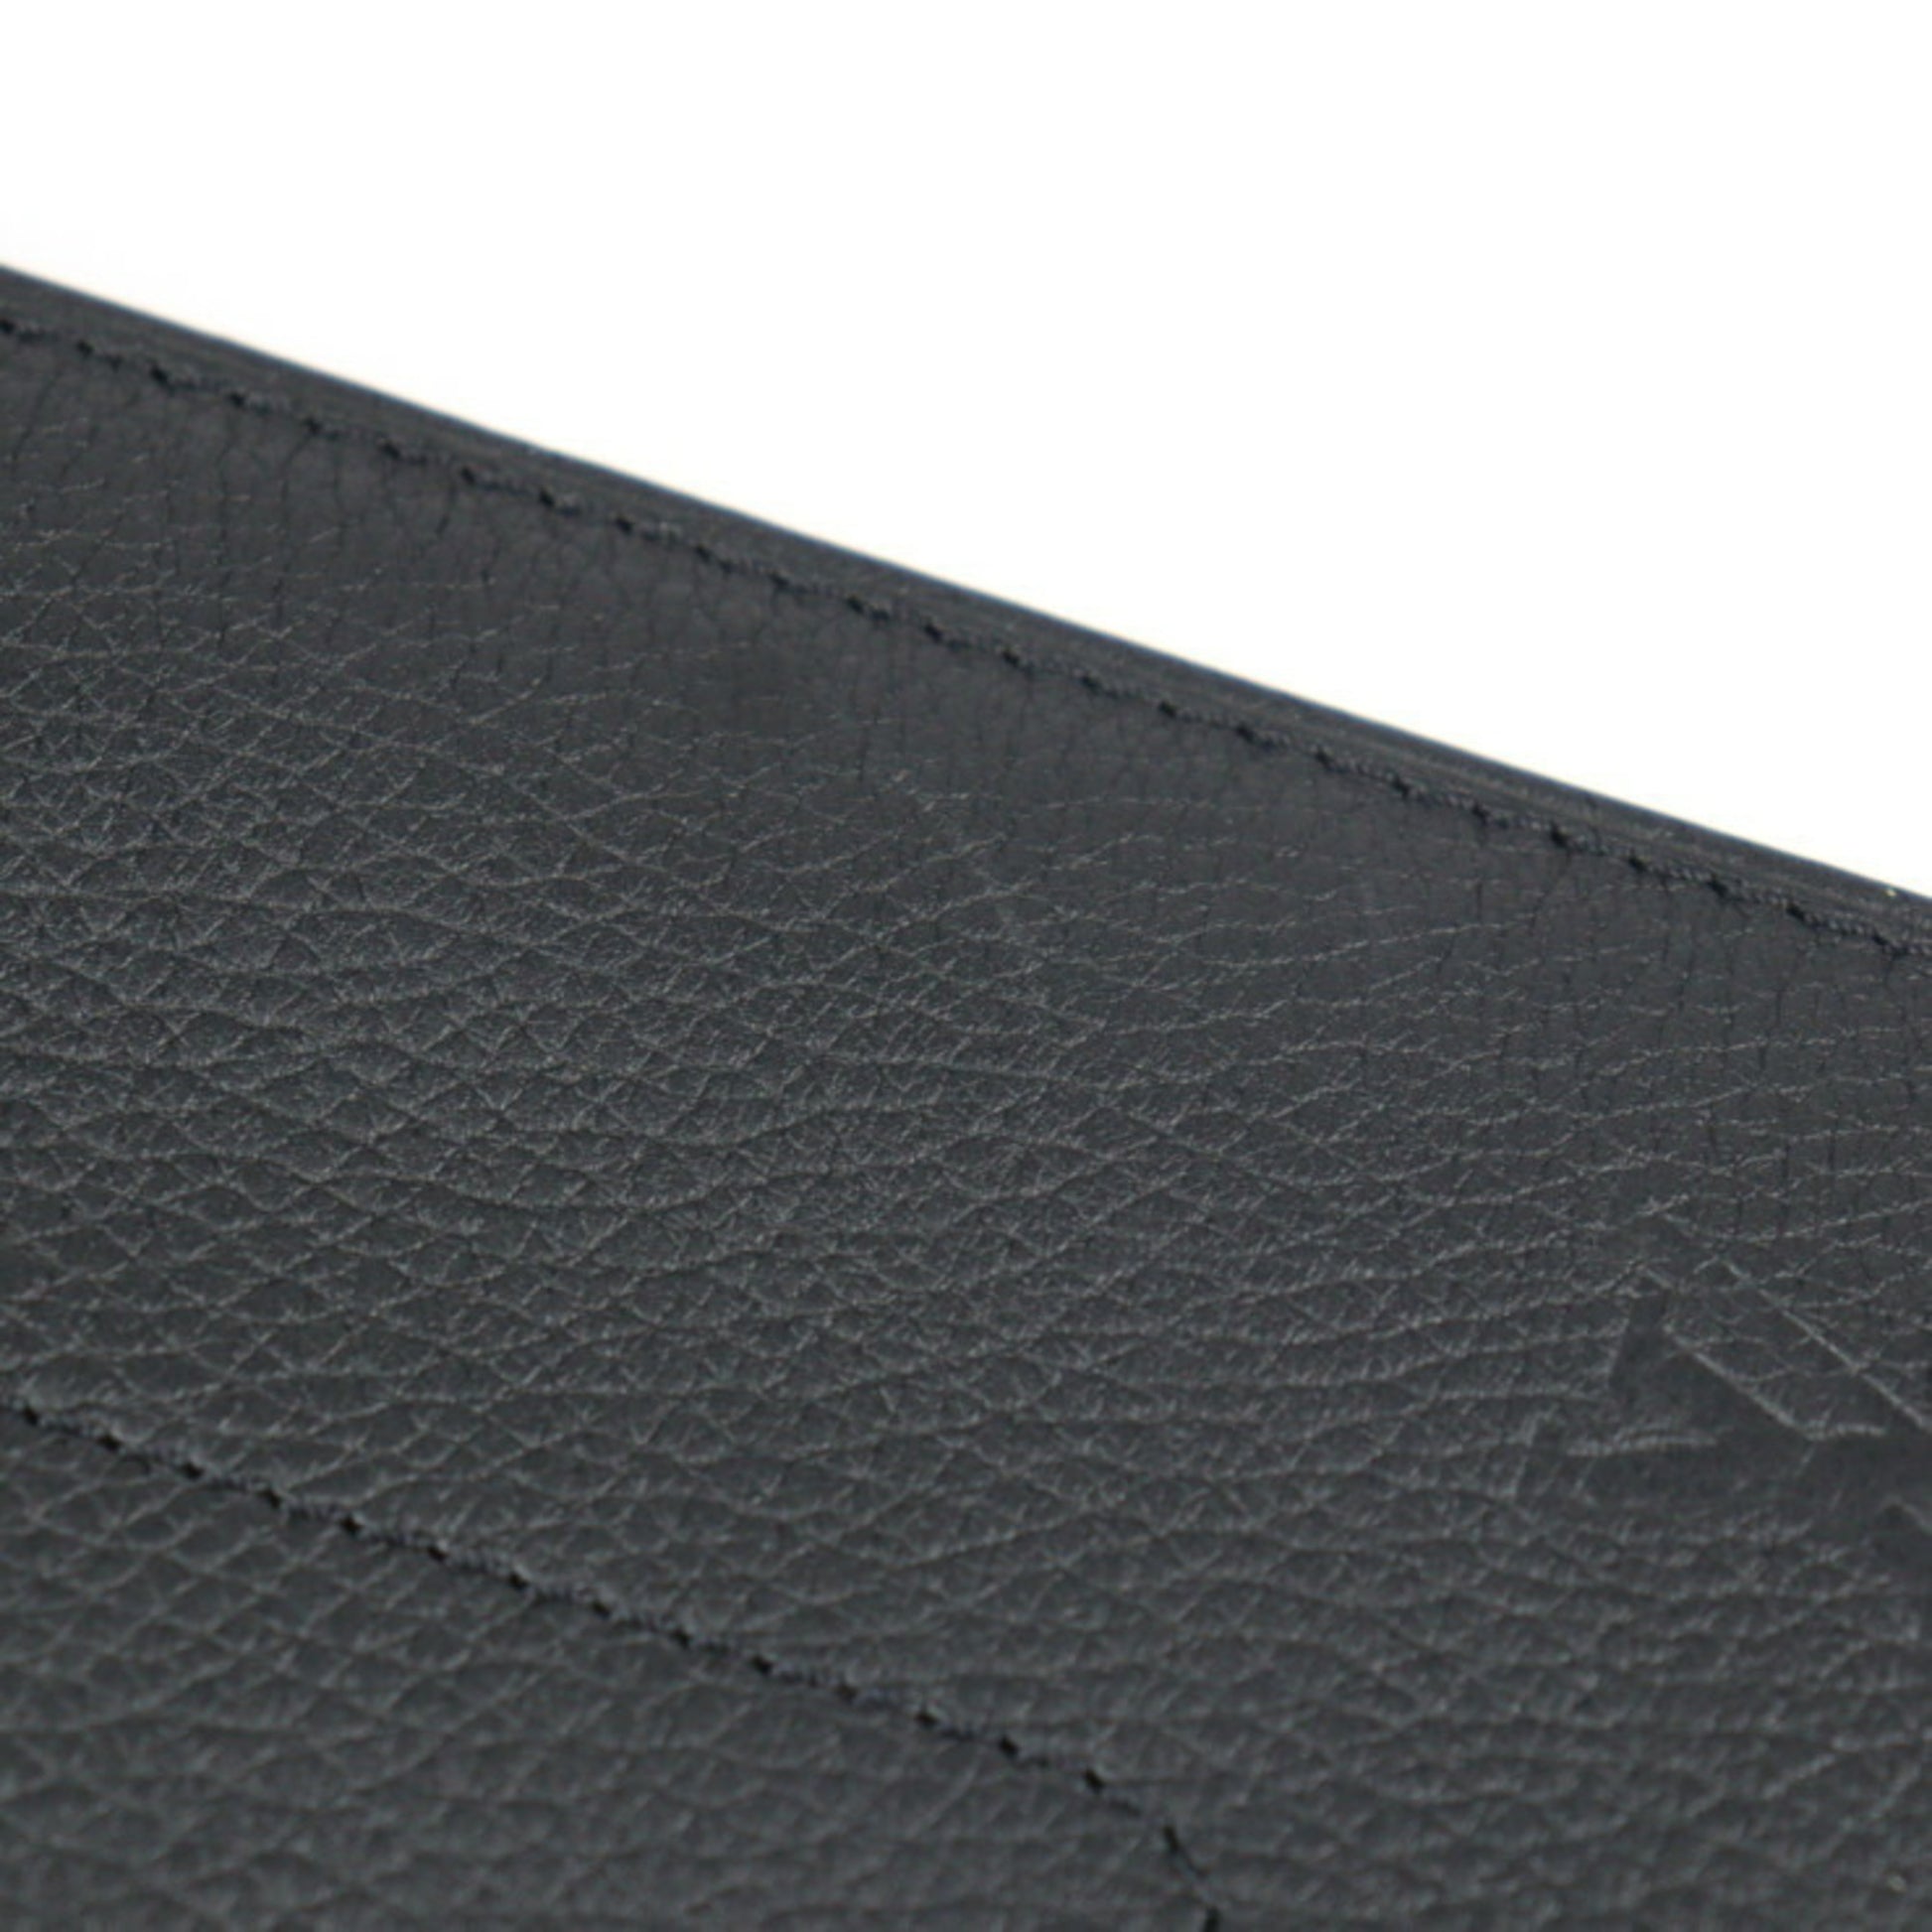 LOUIS VUITTON Pochette Envelope Clutch Bag M62250 Taurillon Leather Bl